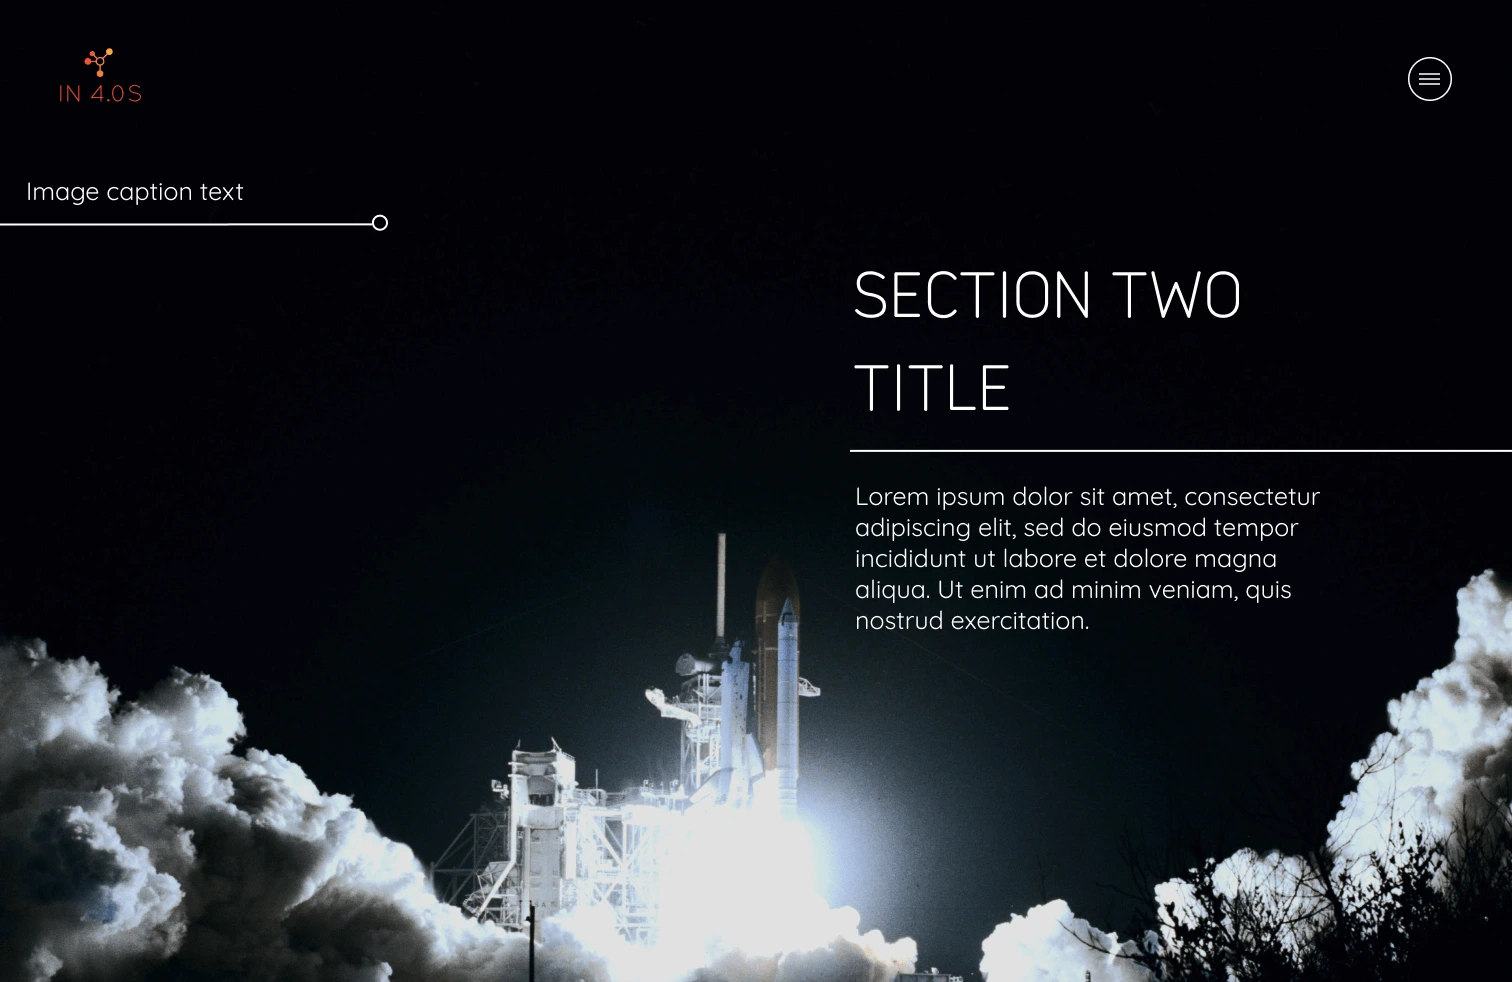 Rocket launch at night, original website draft